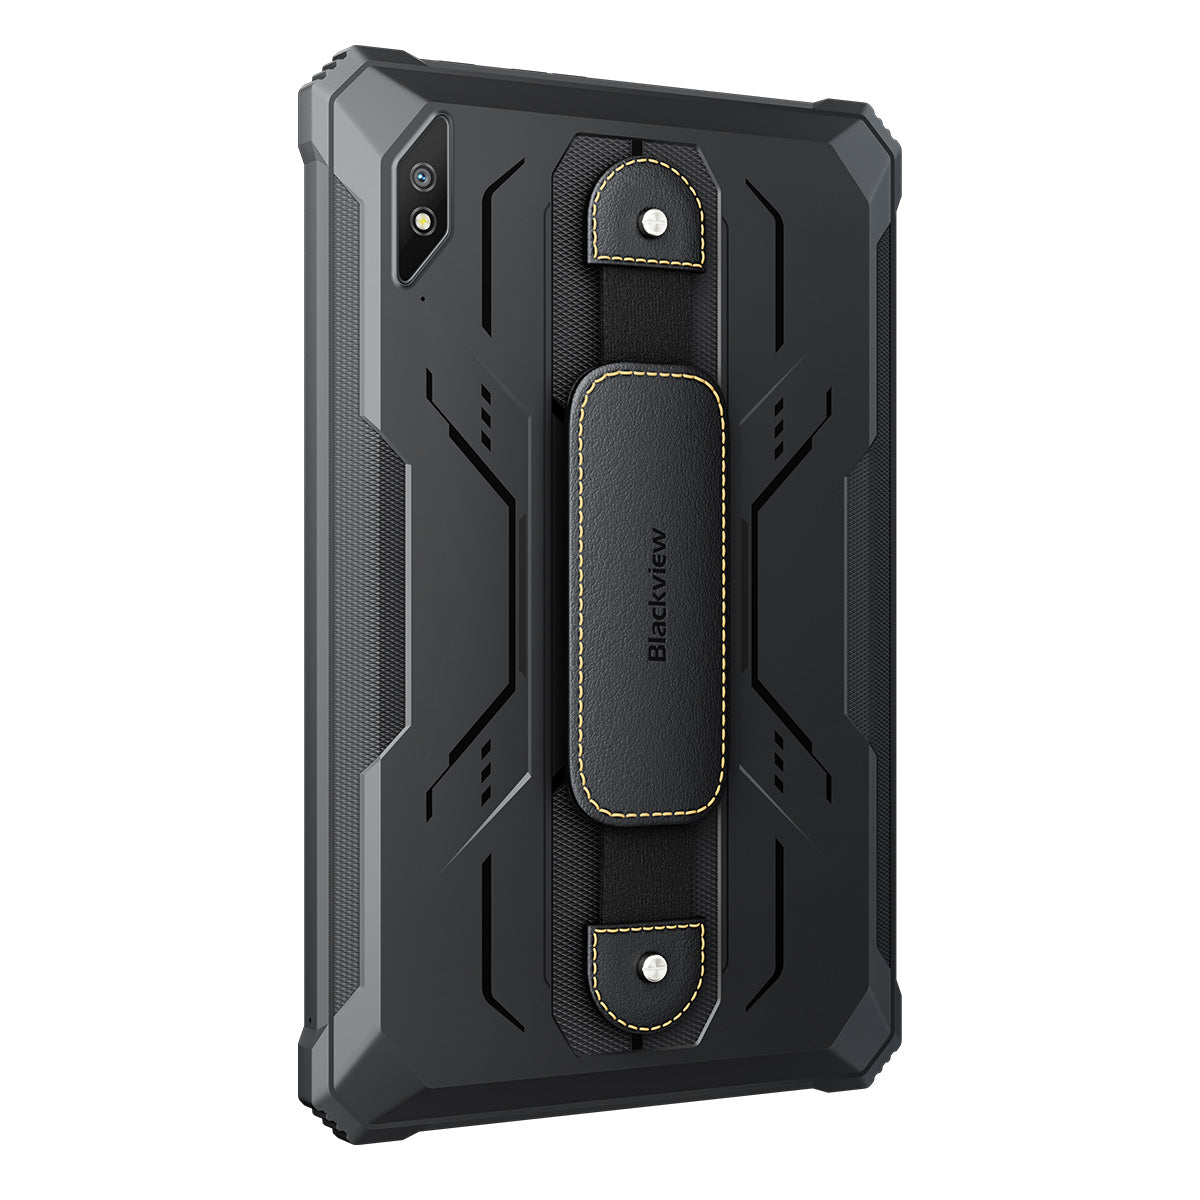 Blackview Active 8 6+128GB 10.36-inch Unisoc T616 Octa-core 22000mAh Tough Tablet